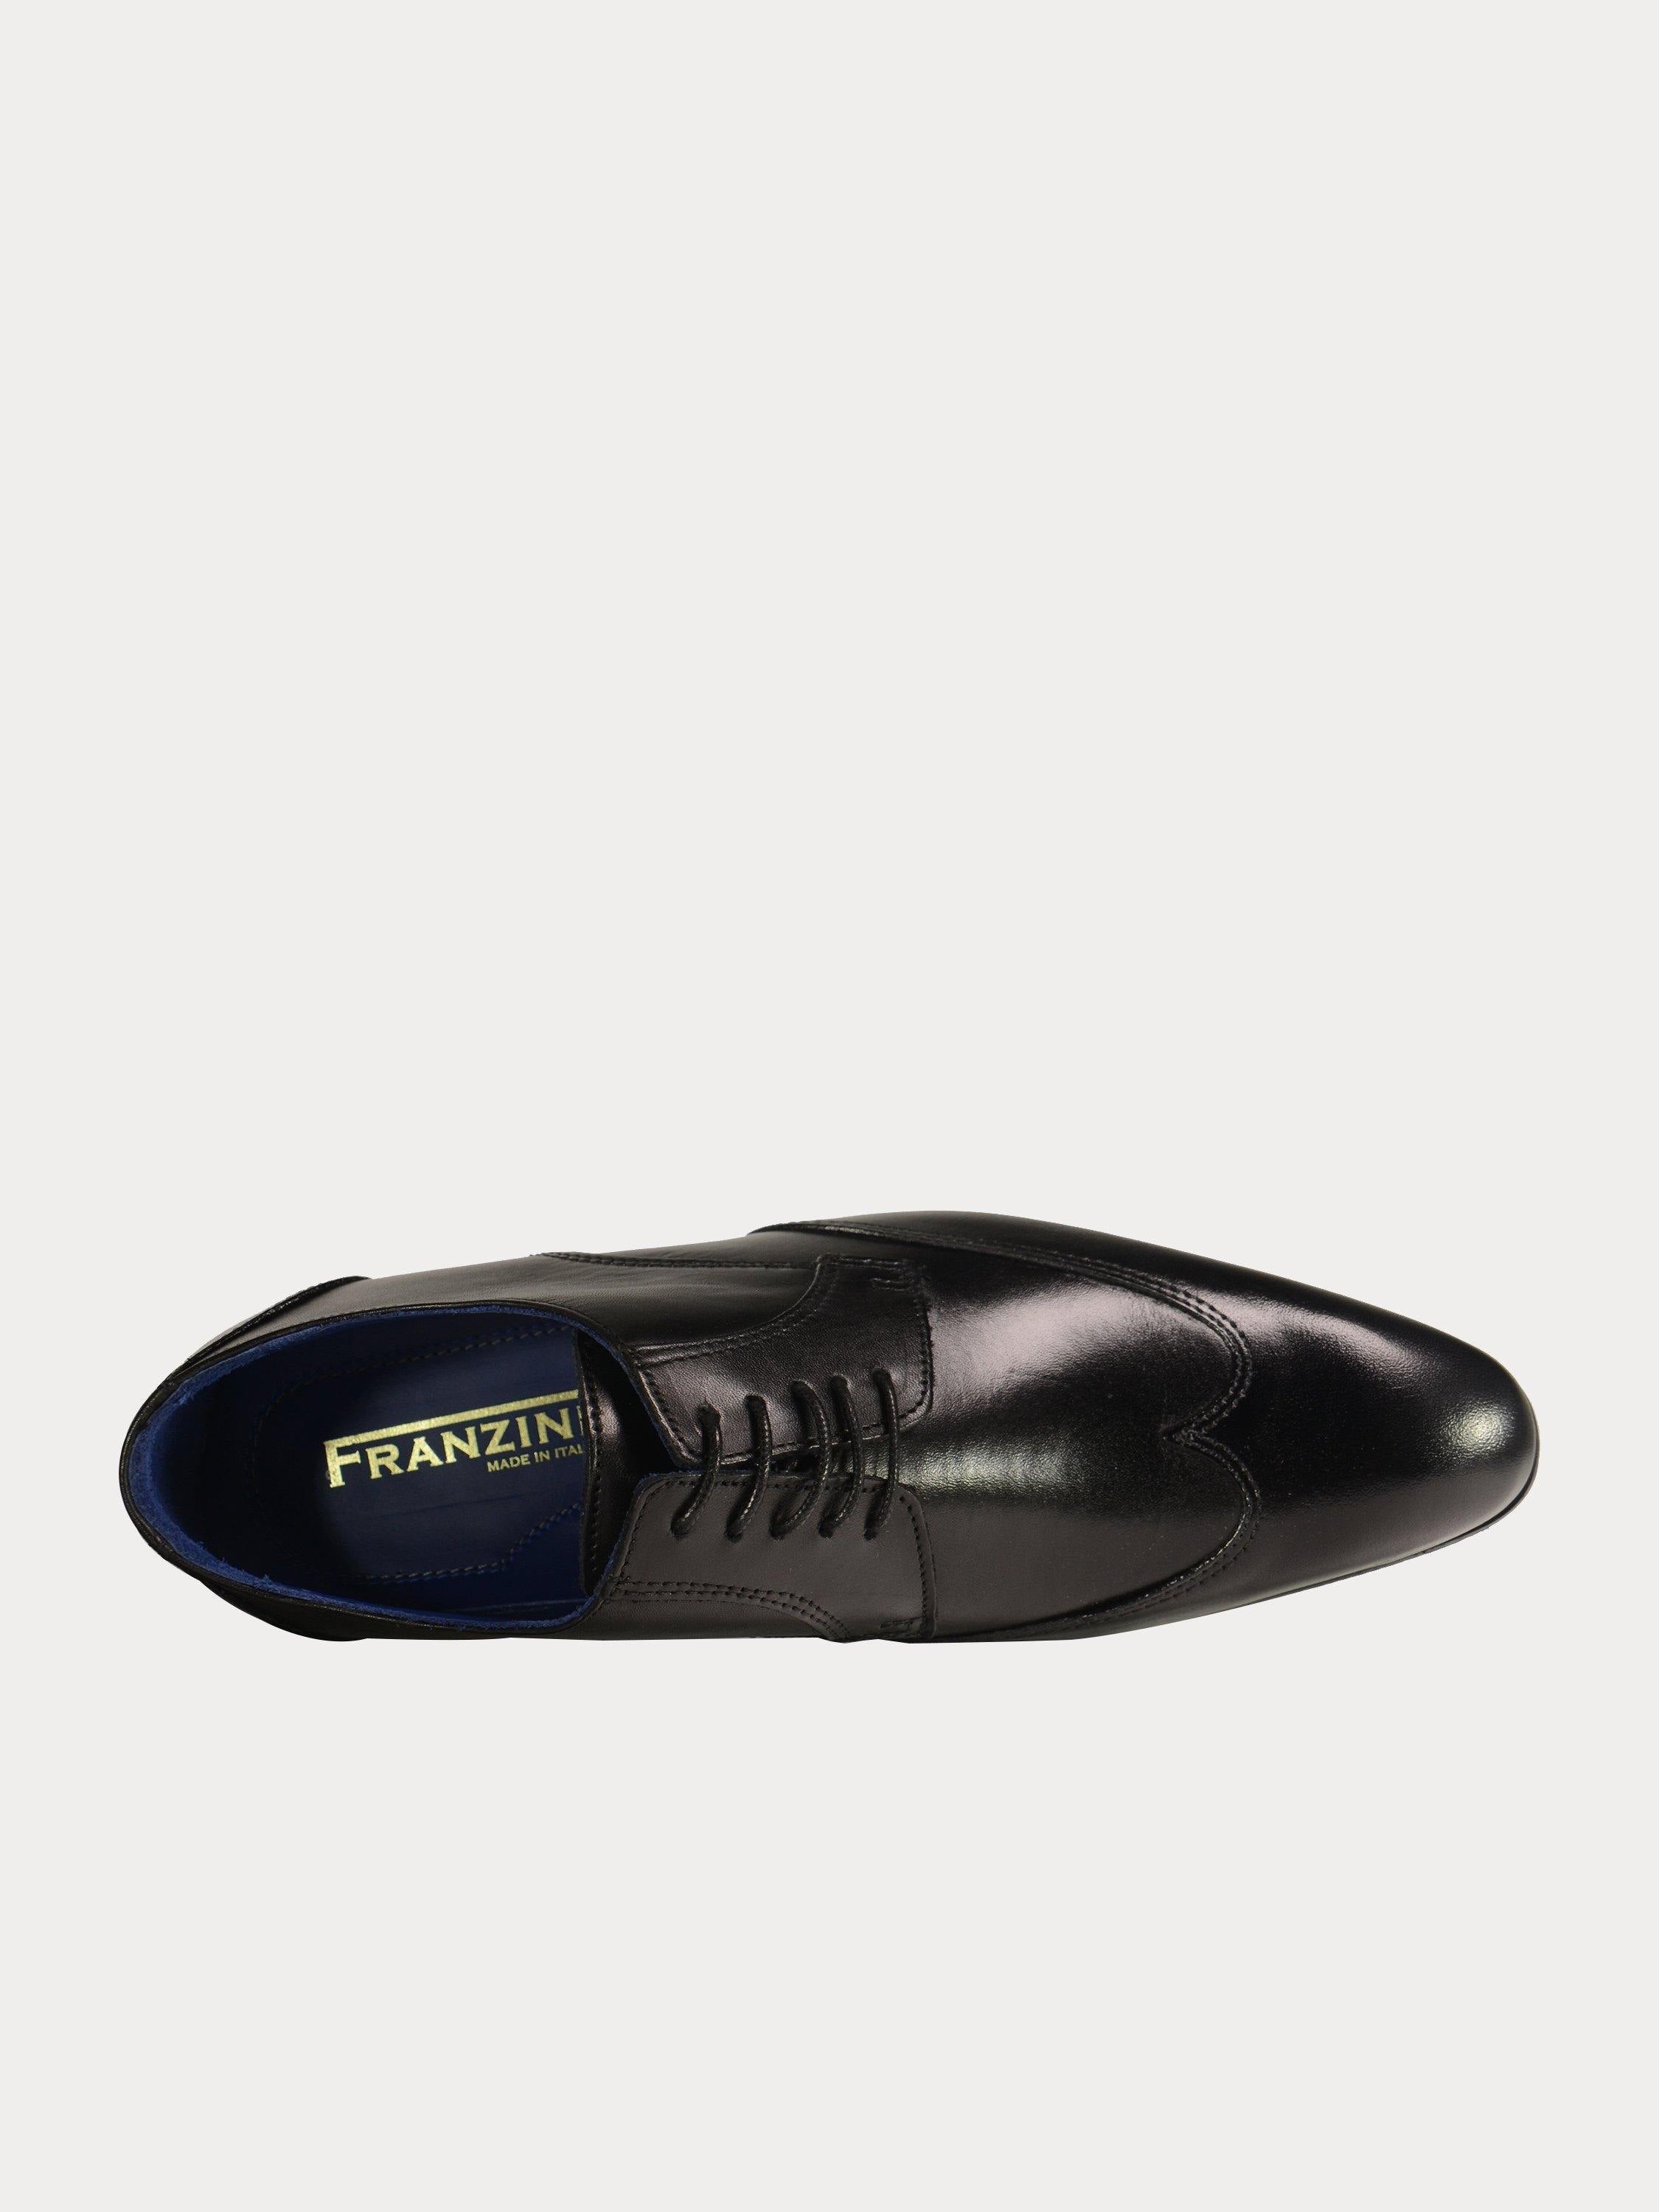 Franzini Men's Lace Up Formal Leather Shoes #color_Black